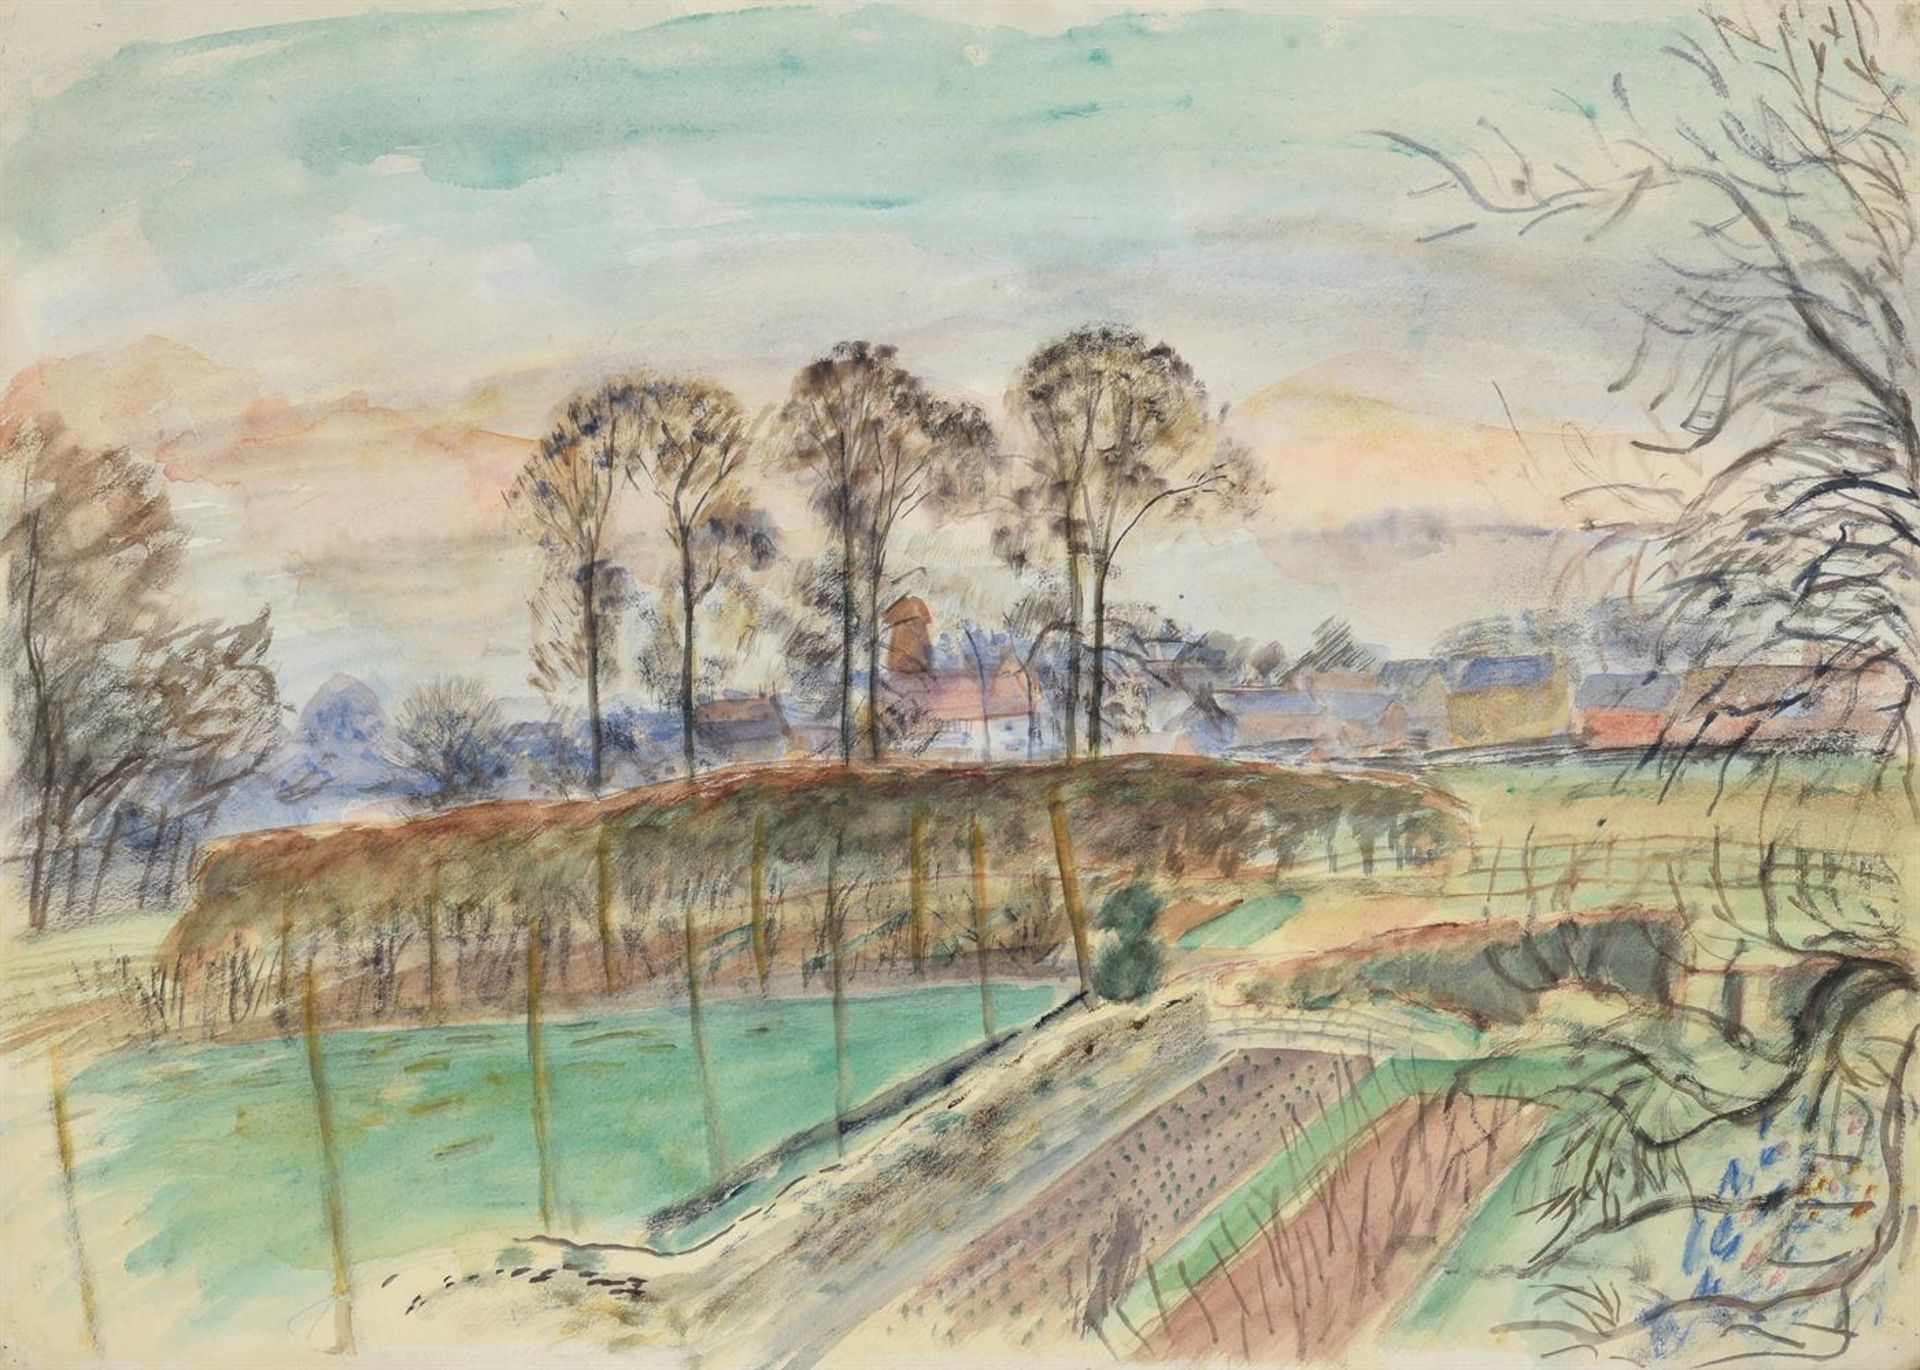 λ LEON UNDERWOOD (BRITISH 1890-1975), RURAL LANDSCAPE WITH A VILLAGE WITH A WINDMILL BEYOND - Image 2 of 3